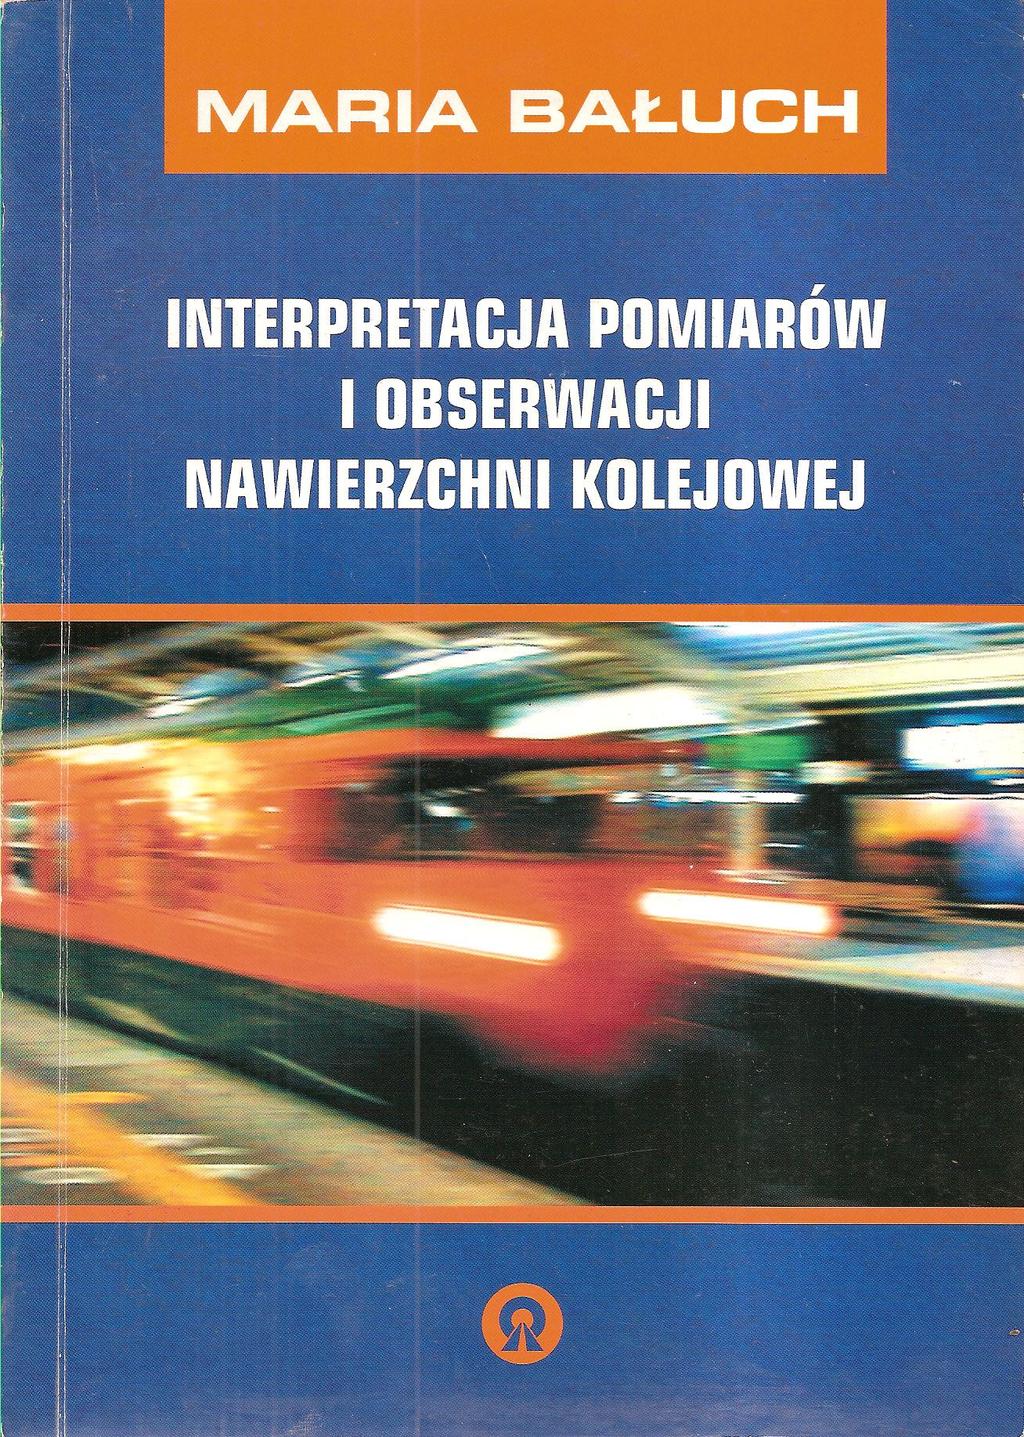 Bałuch M.: Interpretacja pomiarów i obserwacji nawierzchni, Politechnika Radomska 2005 1. 2. 3. 4. 5. 6. 7. 8. 9. 10.